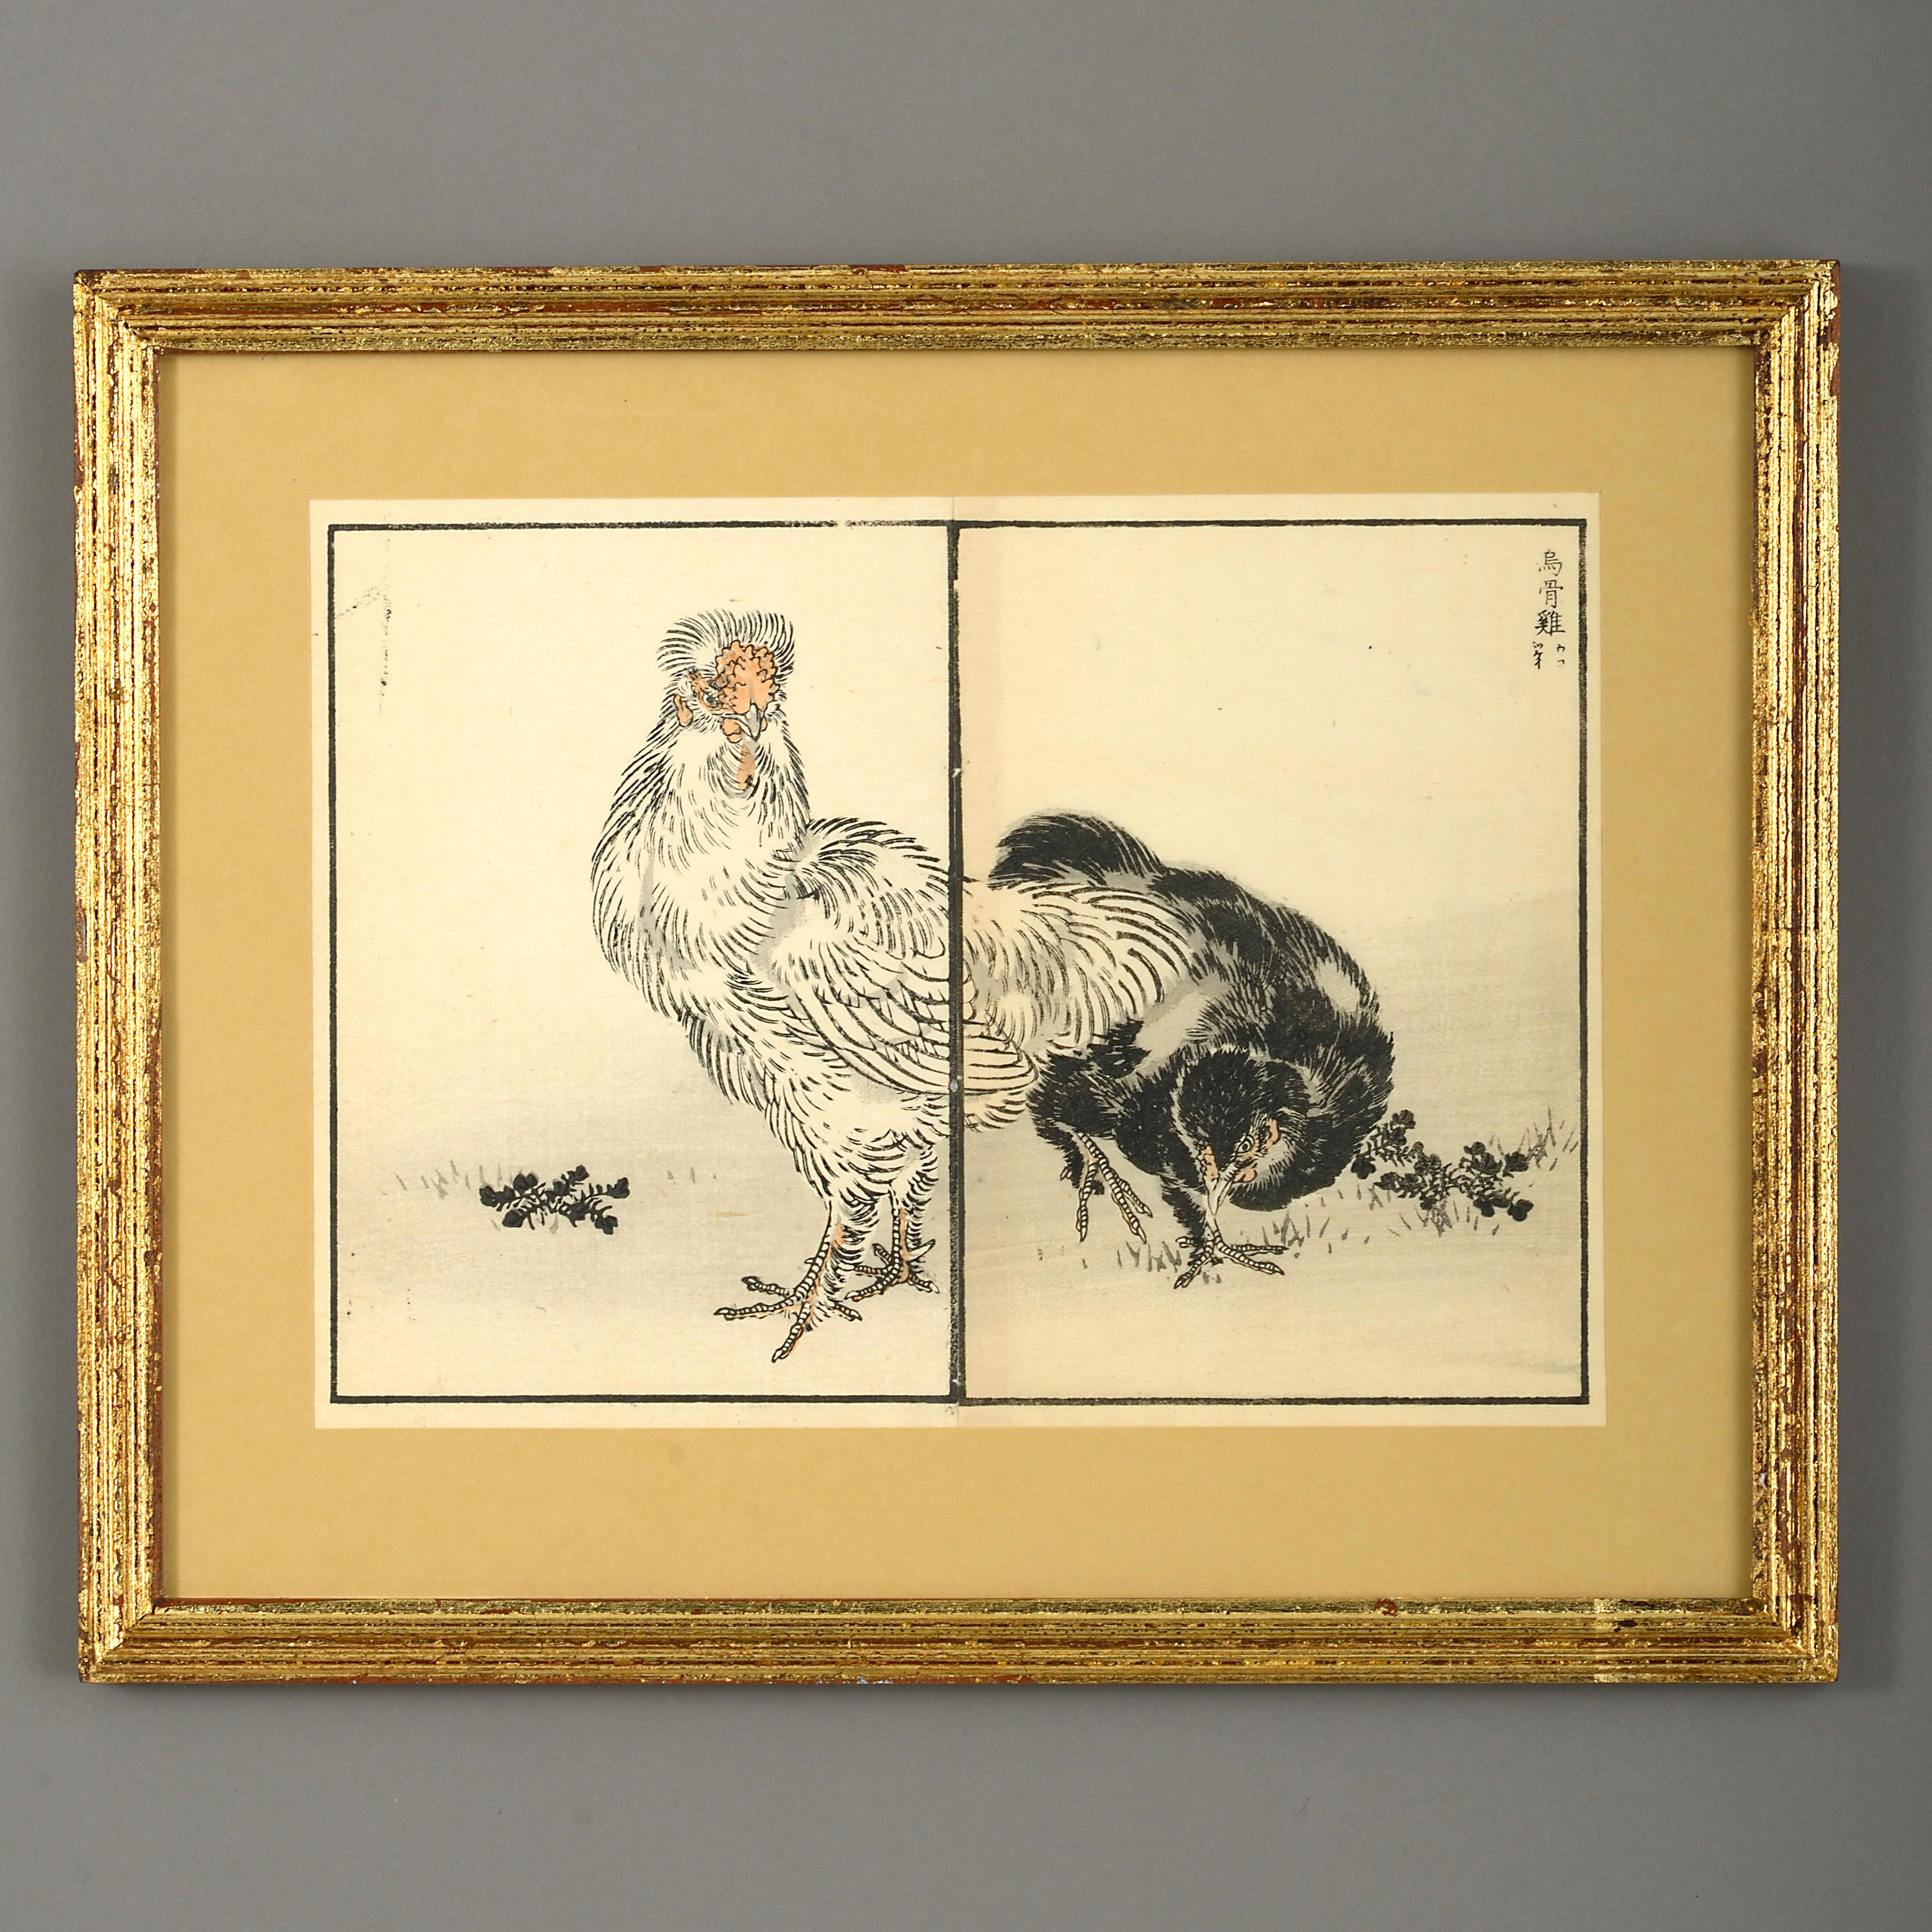 Neun Farbholzschnitte von Vögeln aus dem späten neunzehnten Jahrhundert.

Meiji-Periode.

Gehalten in Giltwood-Rahmen mit Waschpassepartouts.

